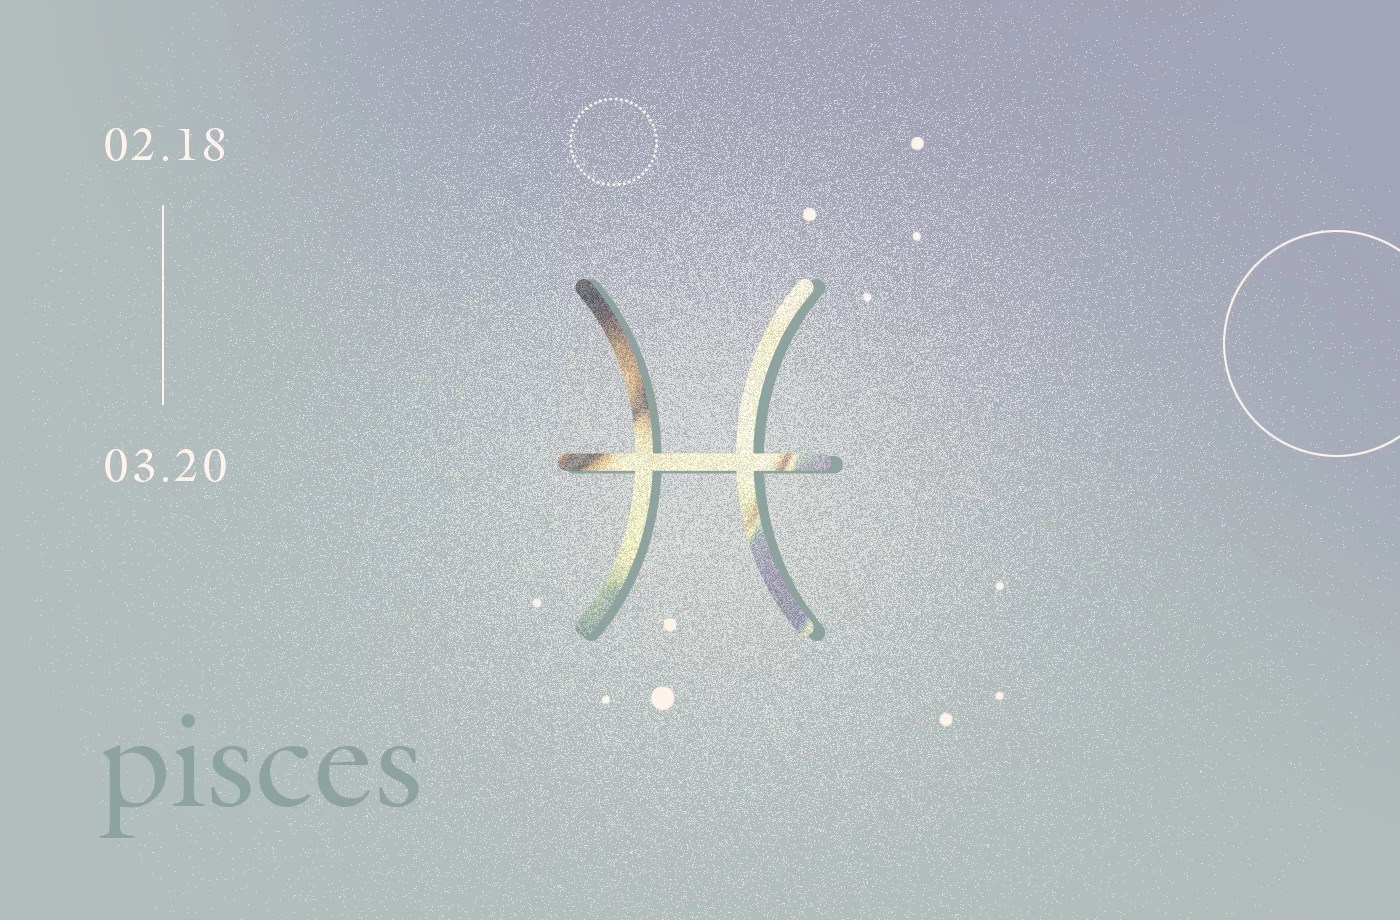 O símbolo do signo de áries do zodíaco, que se assemelha a um carneiro.